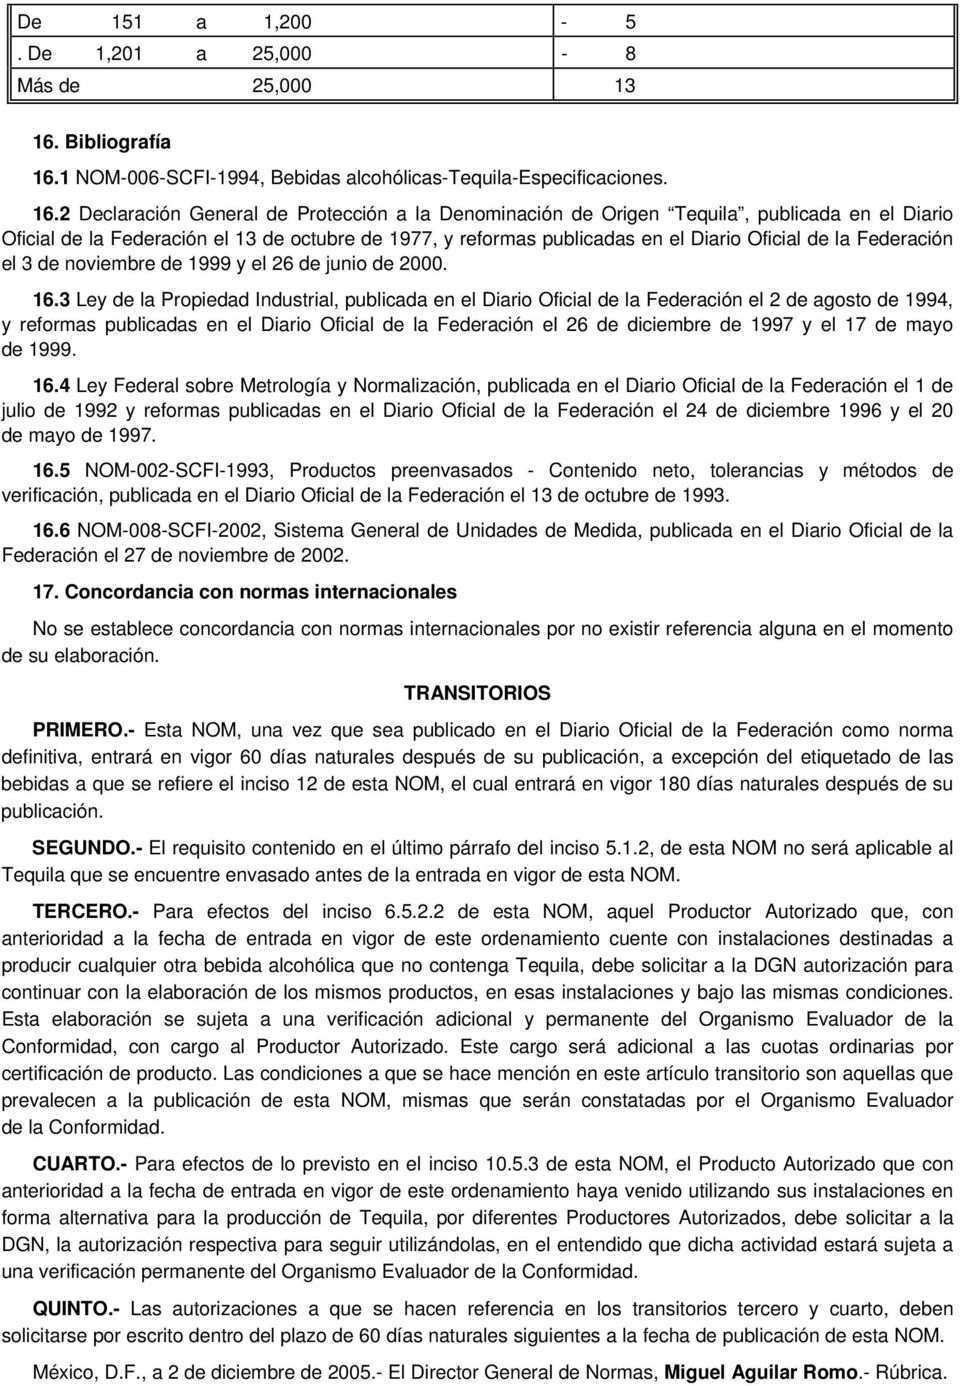 1 NOM-006-SCFI-1994, Bebidas alcohólicas-tequila-especificaciones. 16.